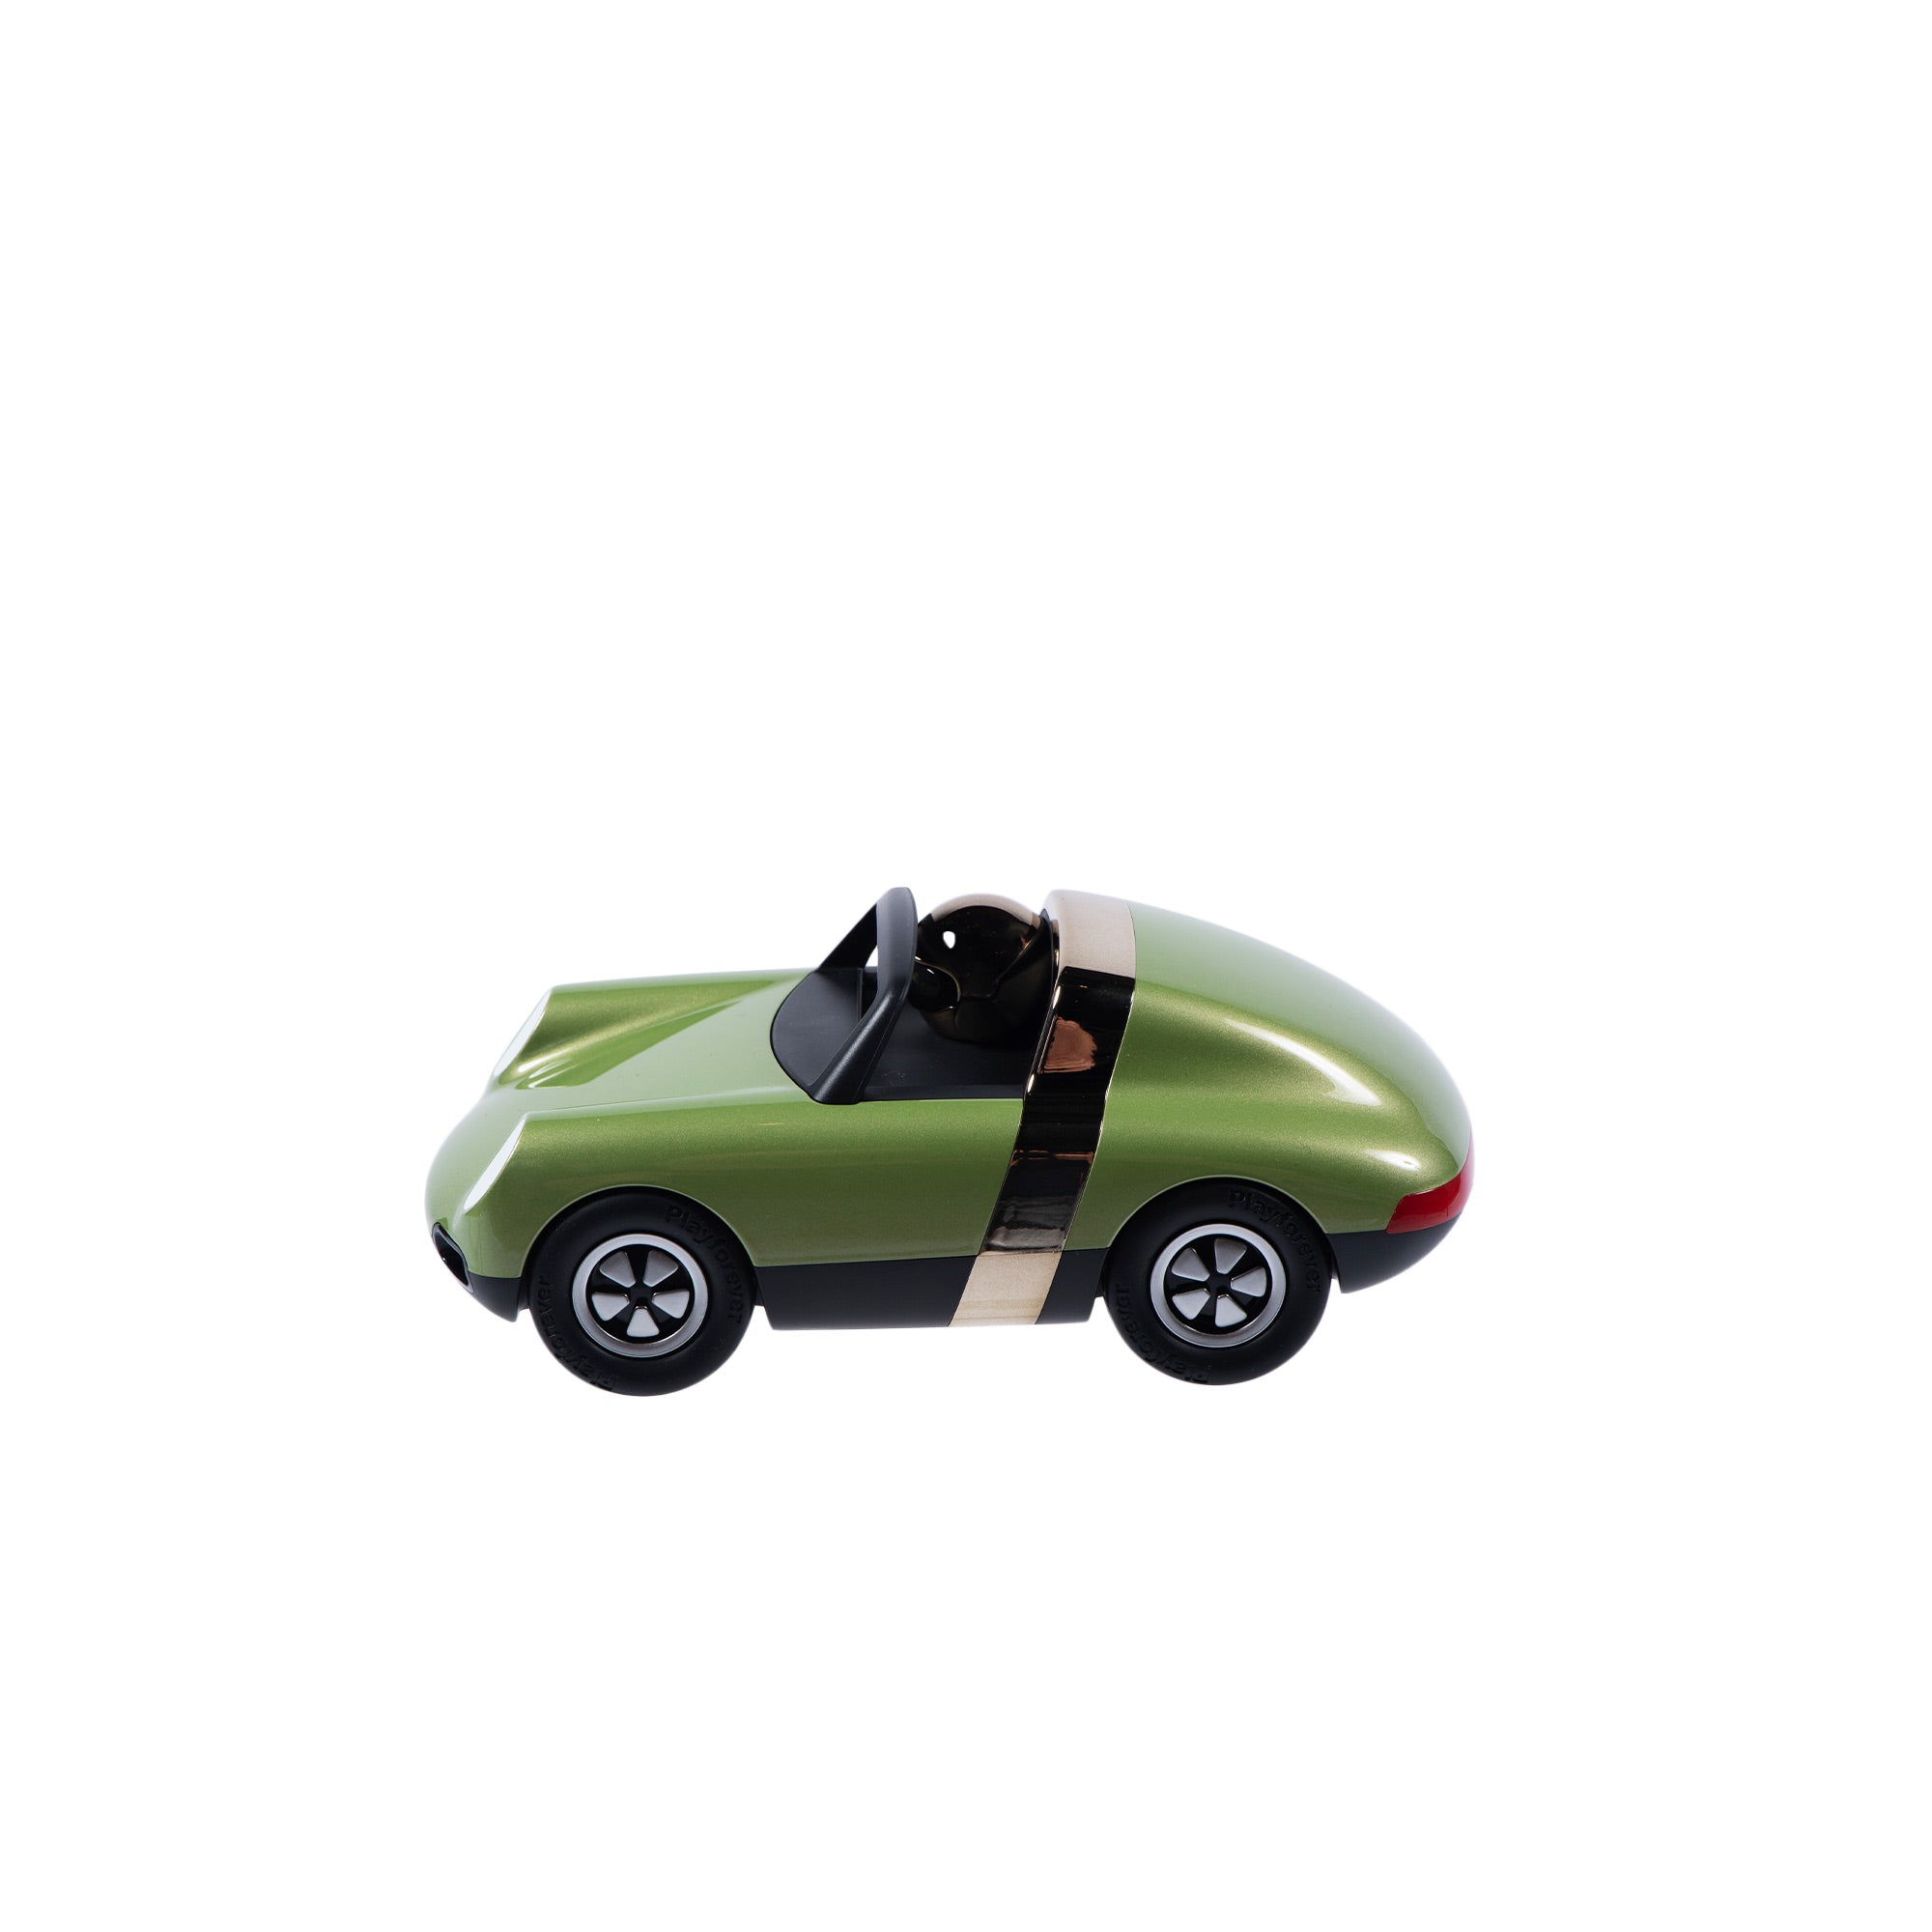 Luft Hopper - Metallic Green Car image 1